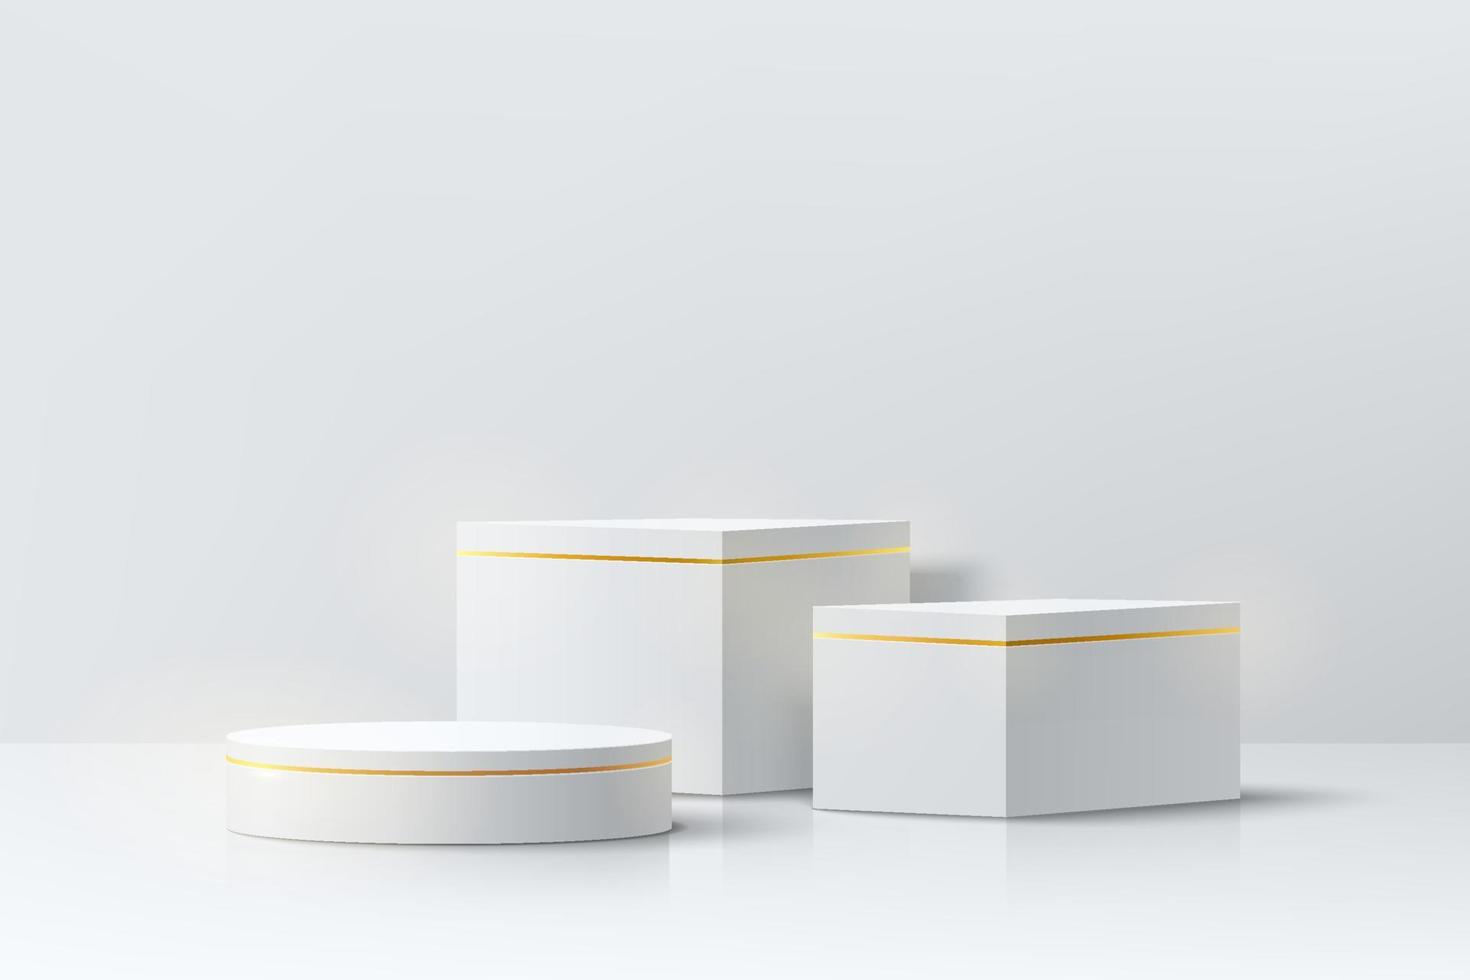 realistisches weißes und goldenes 3d-würfel- und zylindersockelpodium im abstrakten raum. minimale szene für produktbühnenschaufenster, werbedisplay. vektorgeometrische formen gruppendesign. Vektor eps10